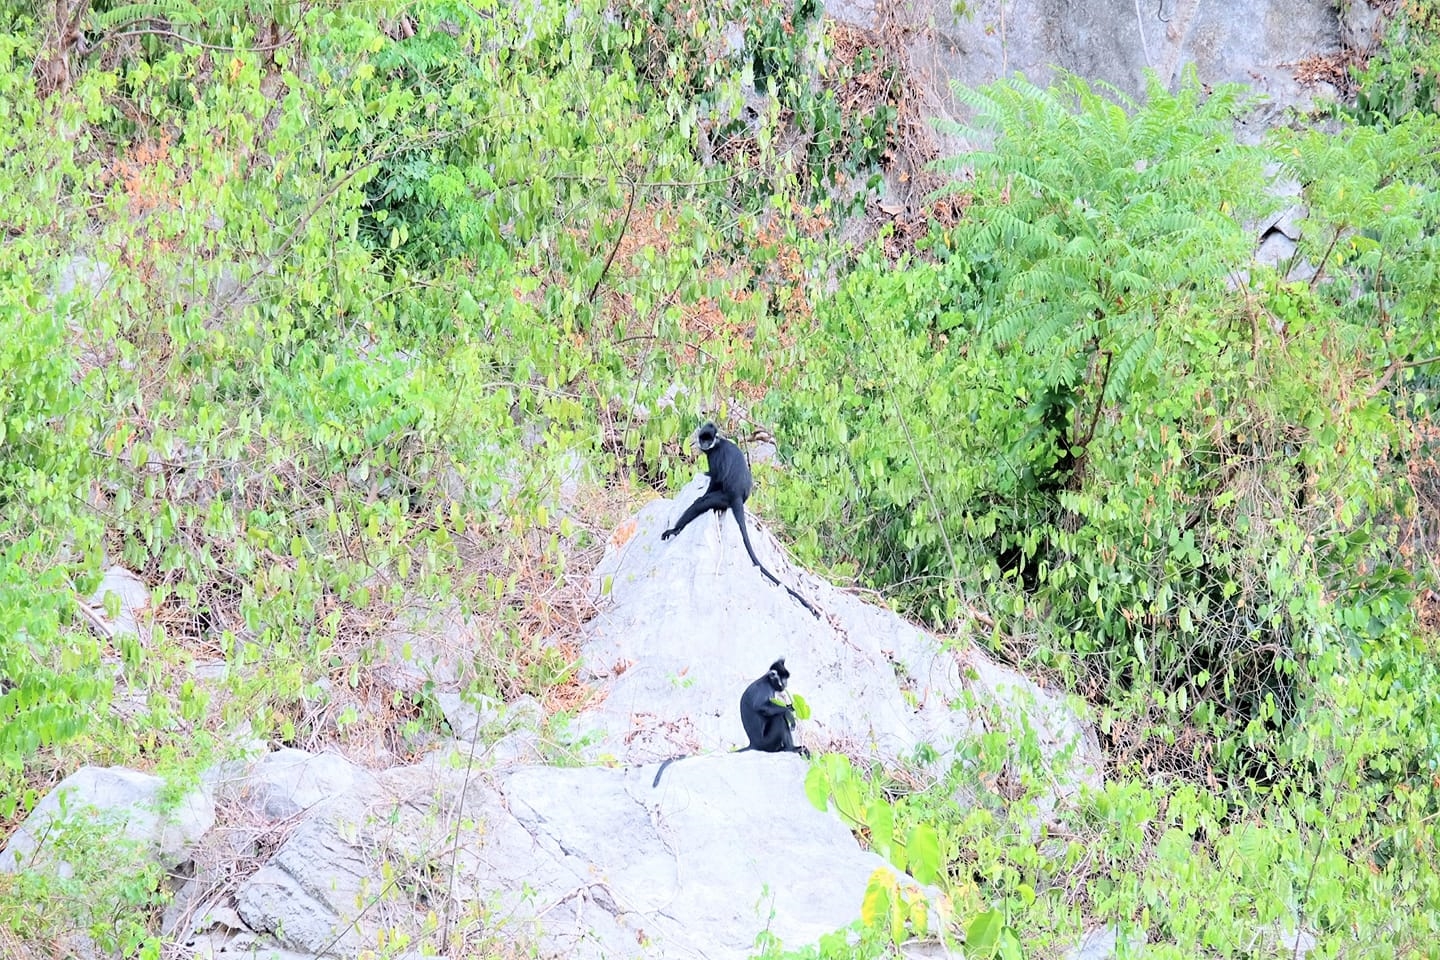 Vùng núi đá vôi ở xã Thạch Hóa là nơi thứ 2 ở nước ta ghi nhận sự tồn tại của Vọoc đen má xám quý hiếm